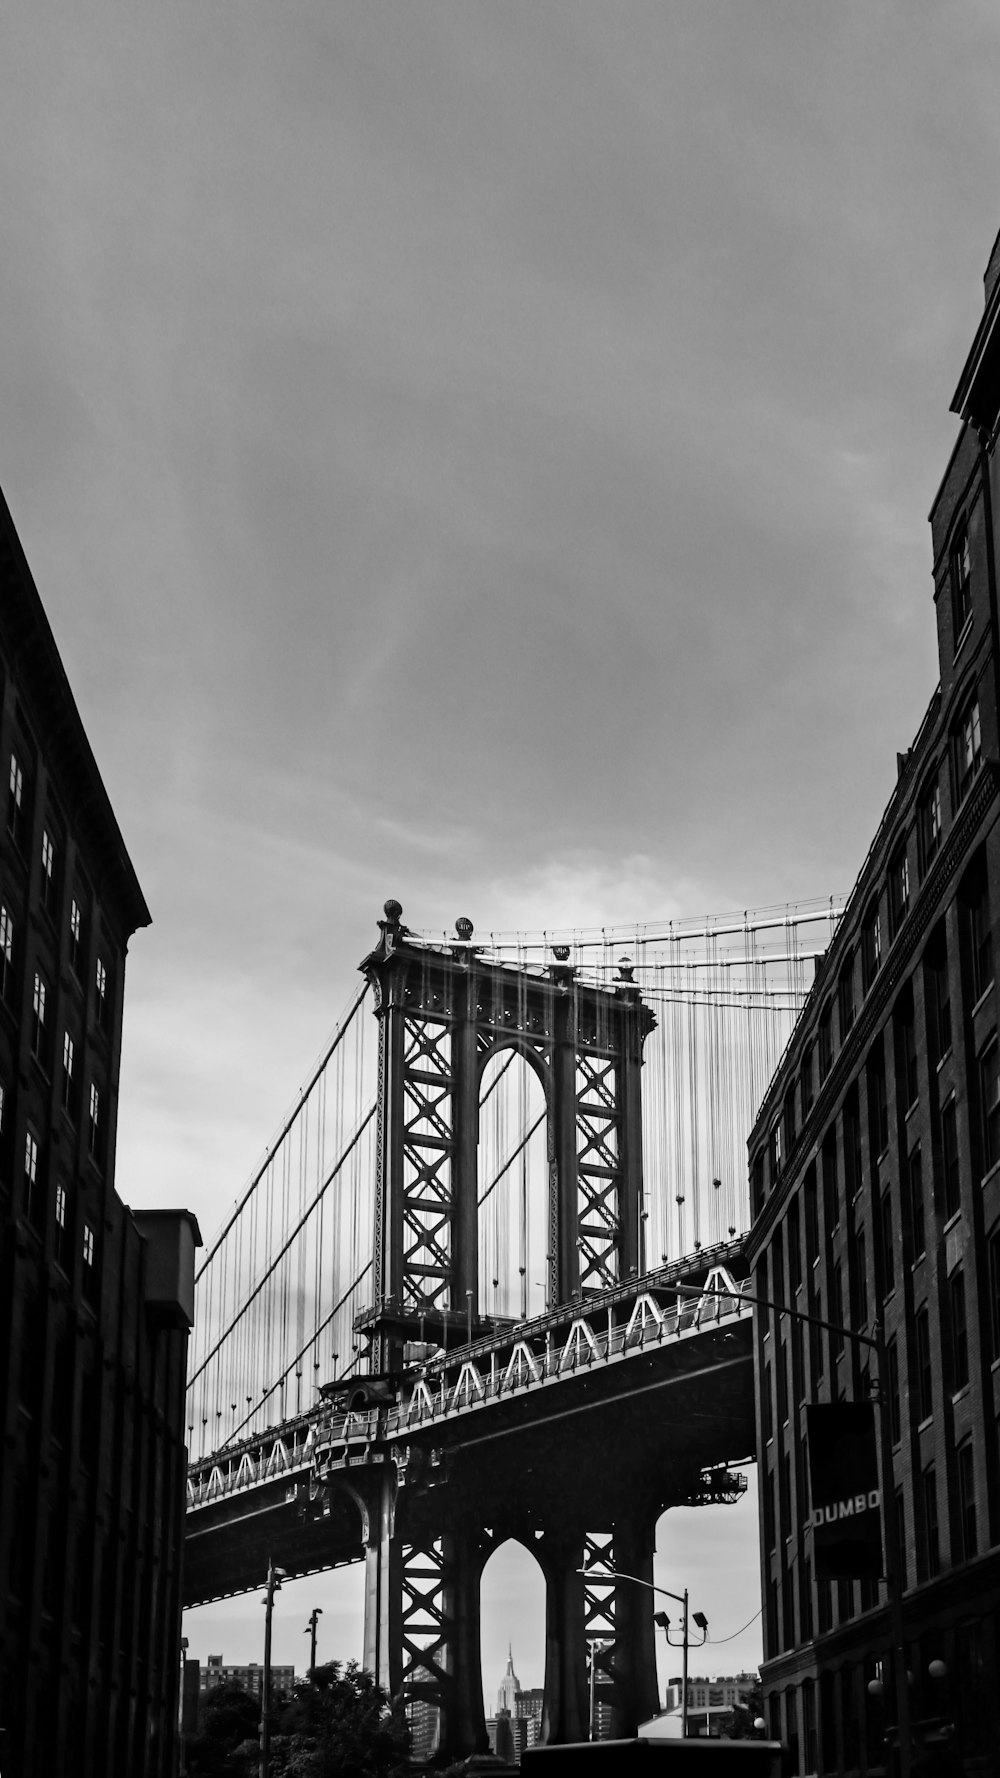 뉴욕 맨해튼 브리지의 그레이스케일 사진